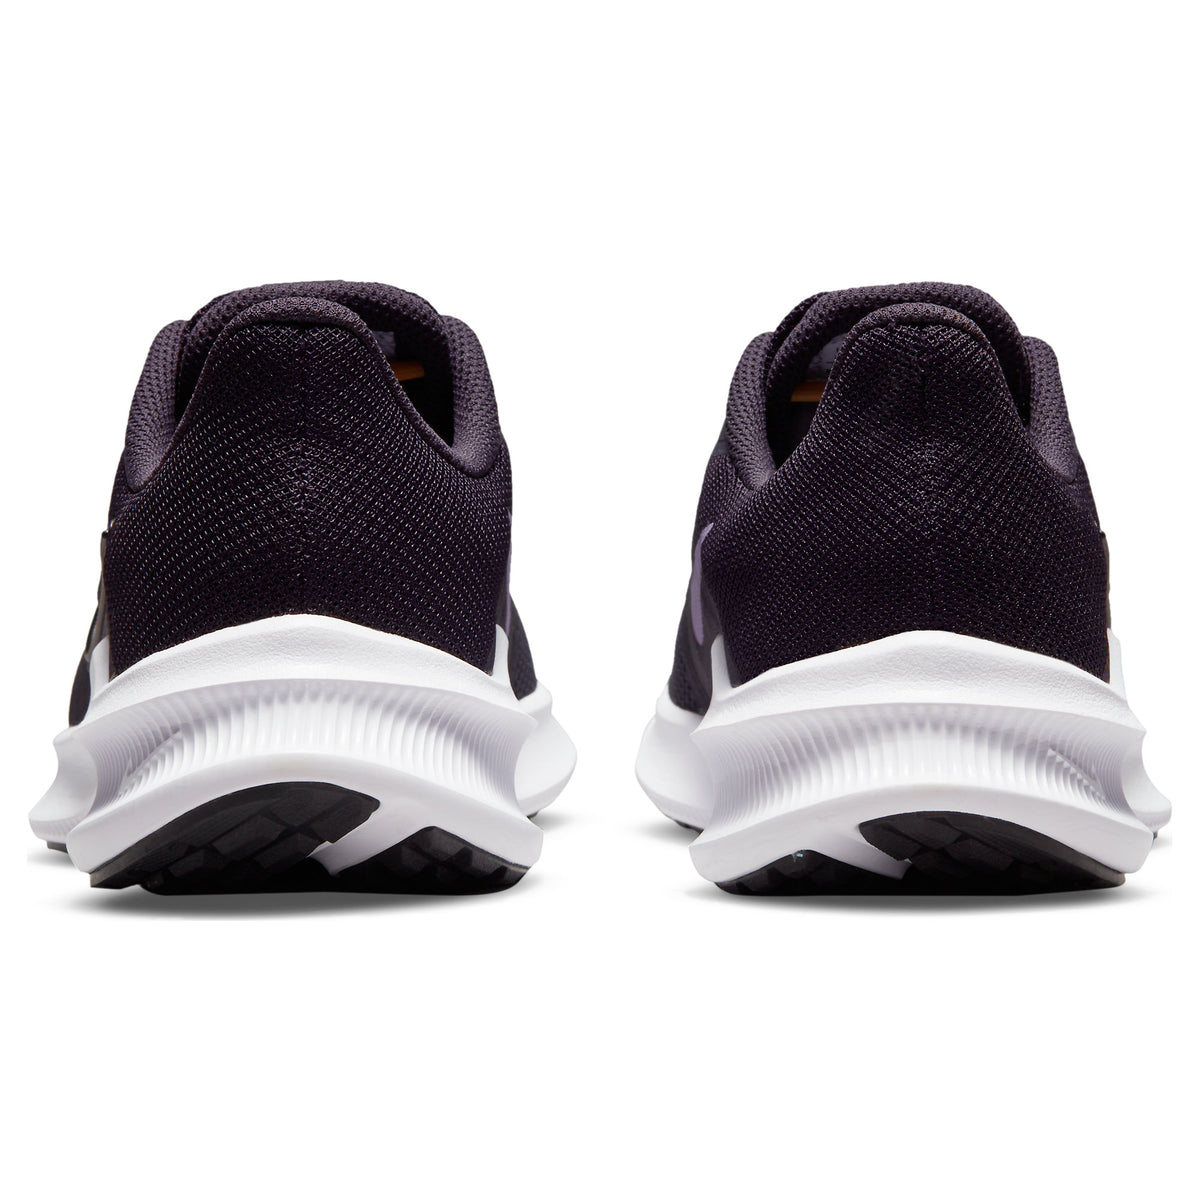 Zapatilla Nike W DownShifter 11 de Mujer color Violeta